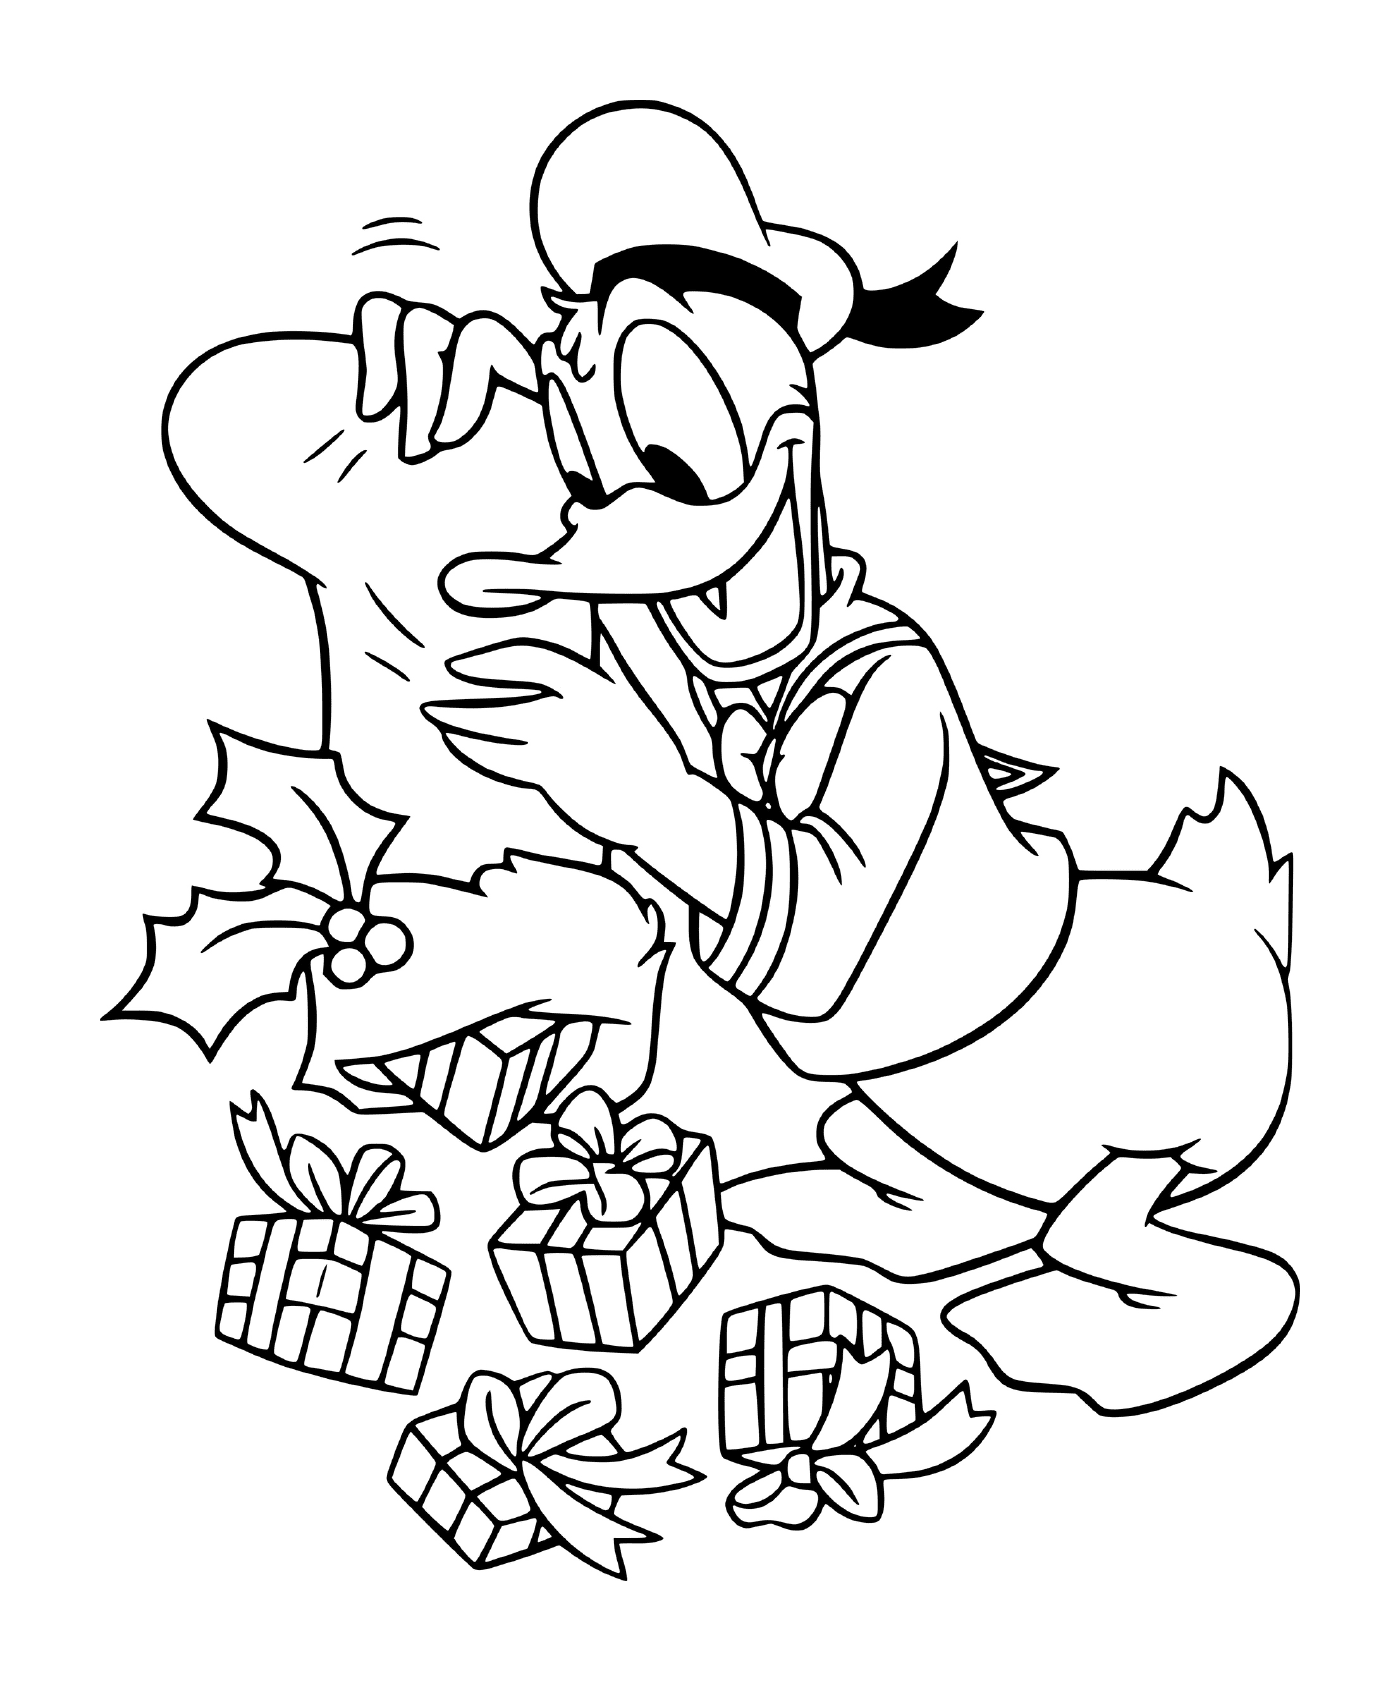  El Pato Donald de Disney vacía sus medias navideñas llenas de regalos 